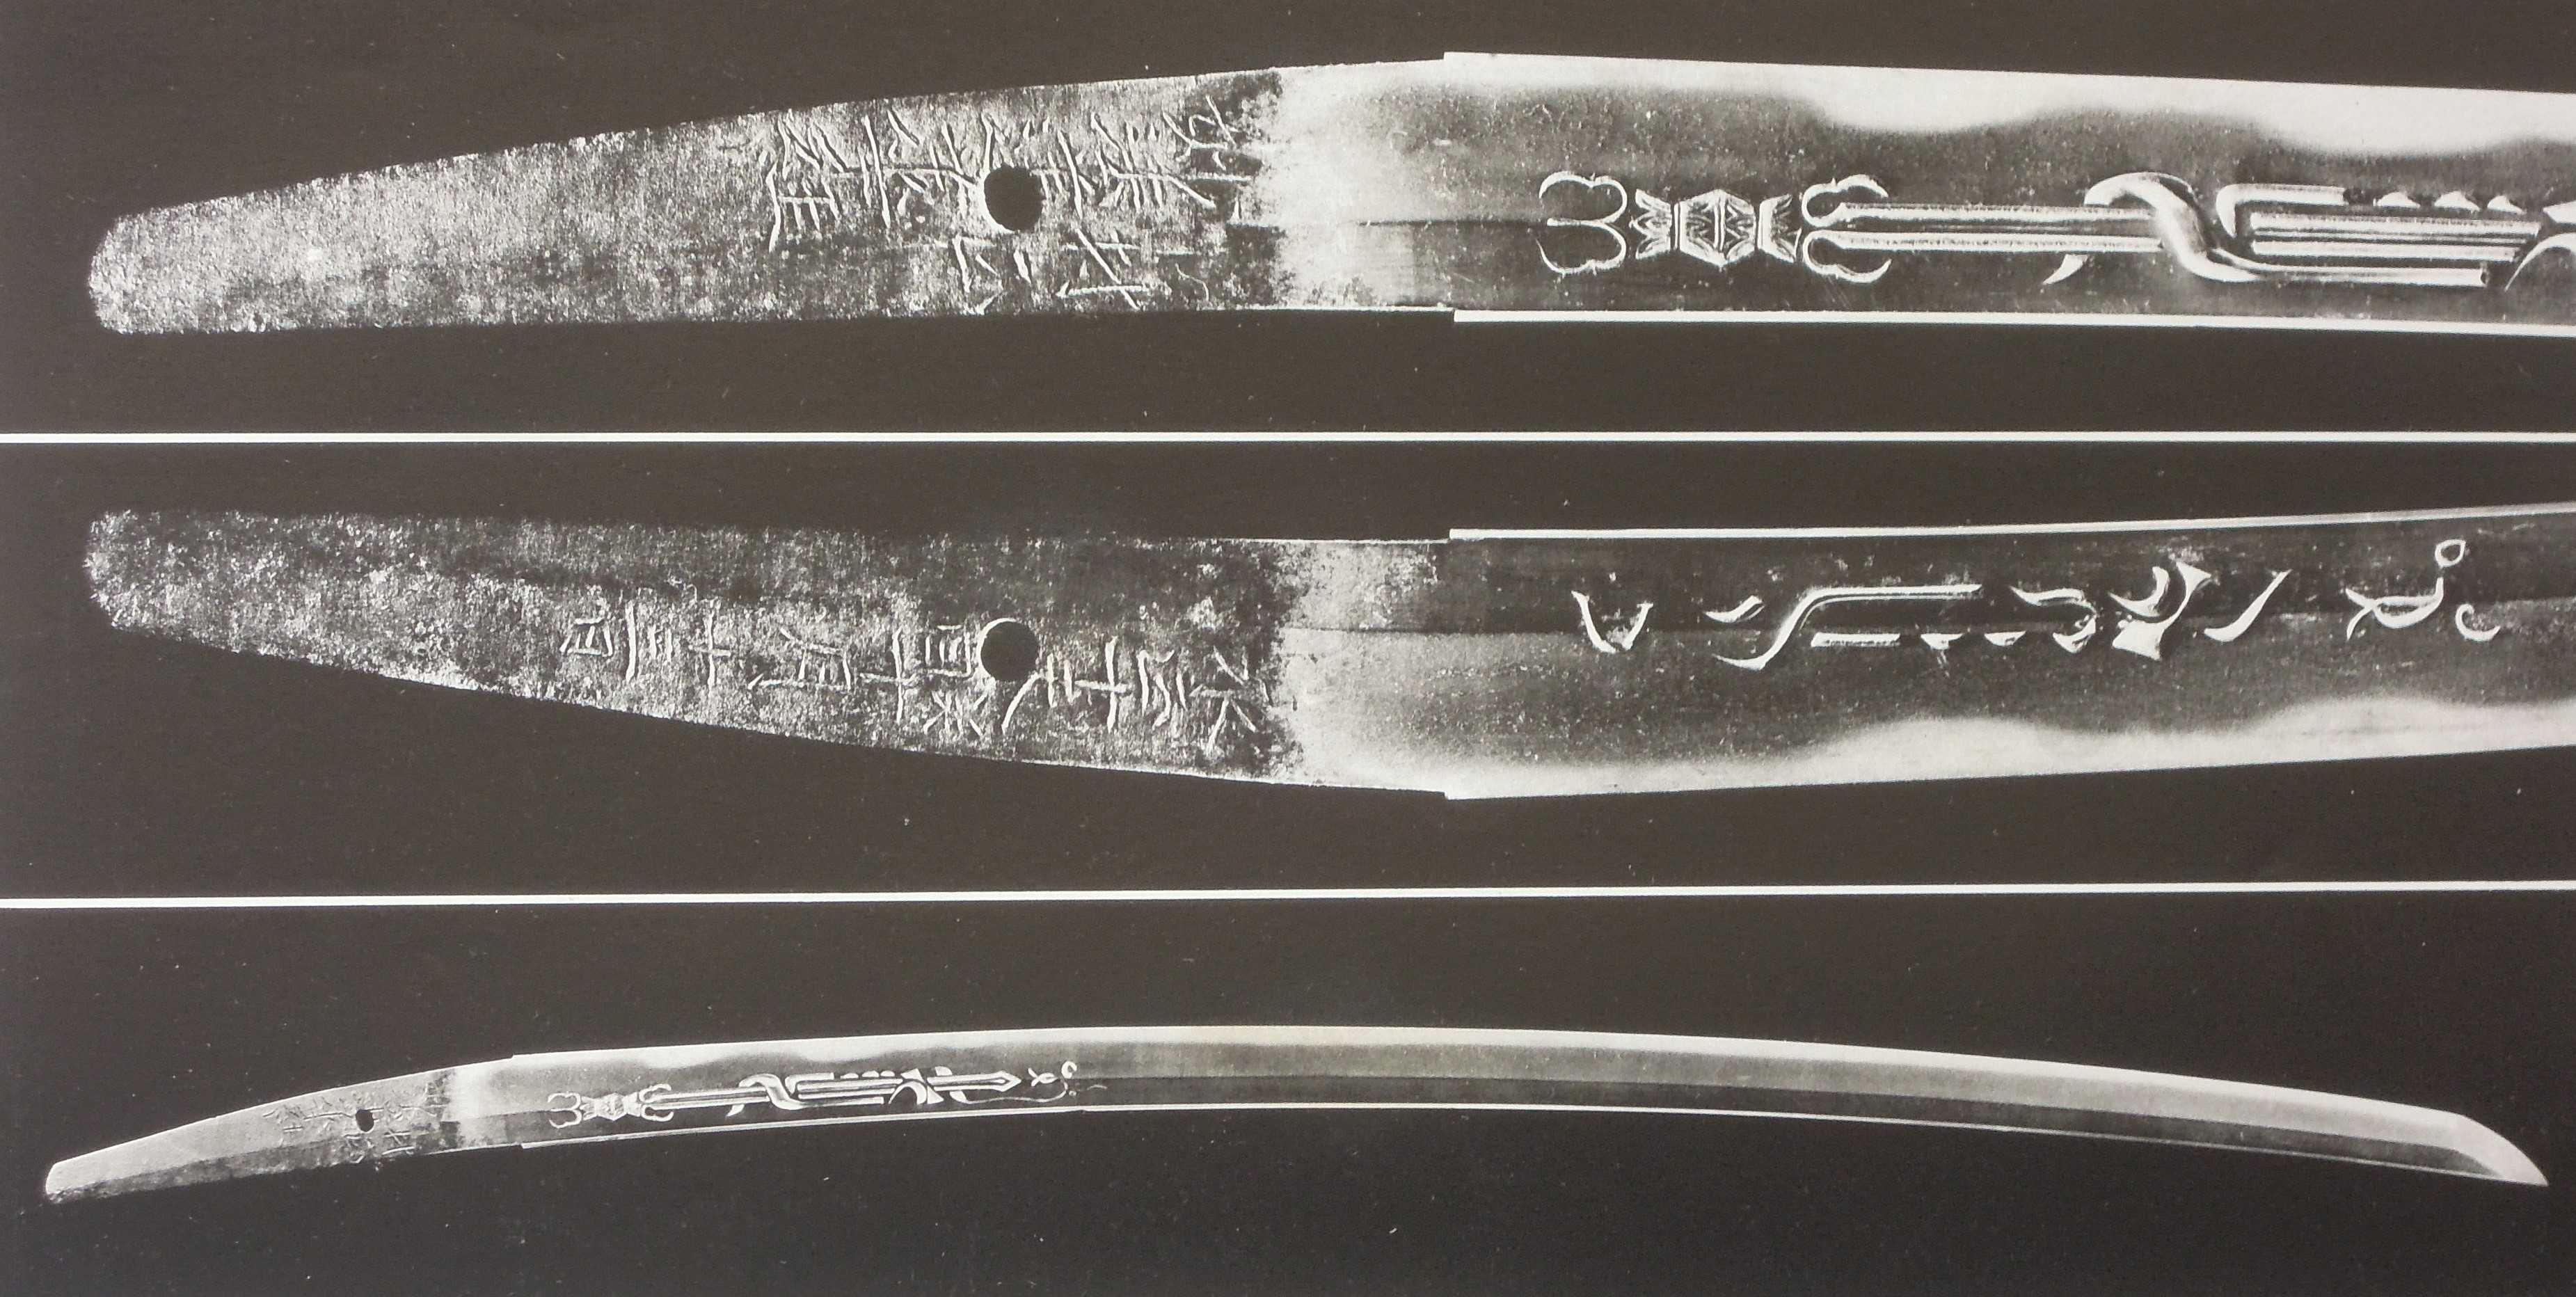 刃紋の構成について一考察 | 日本刀讃歌☆心の中の日本刀 - 楽天ブログ